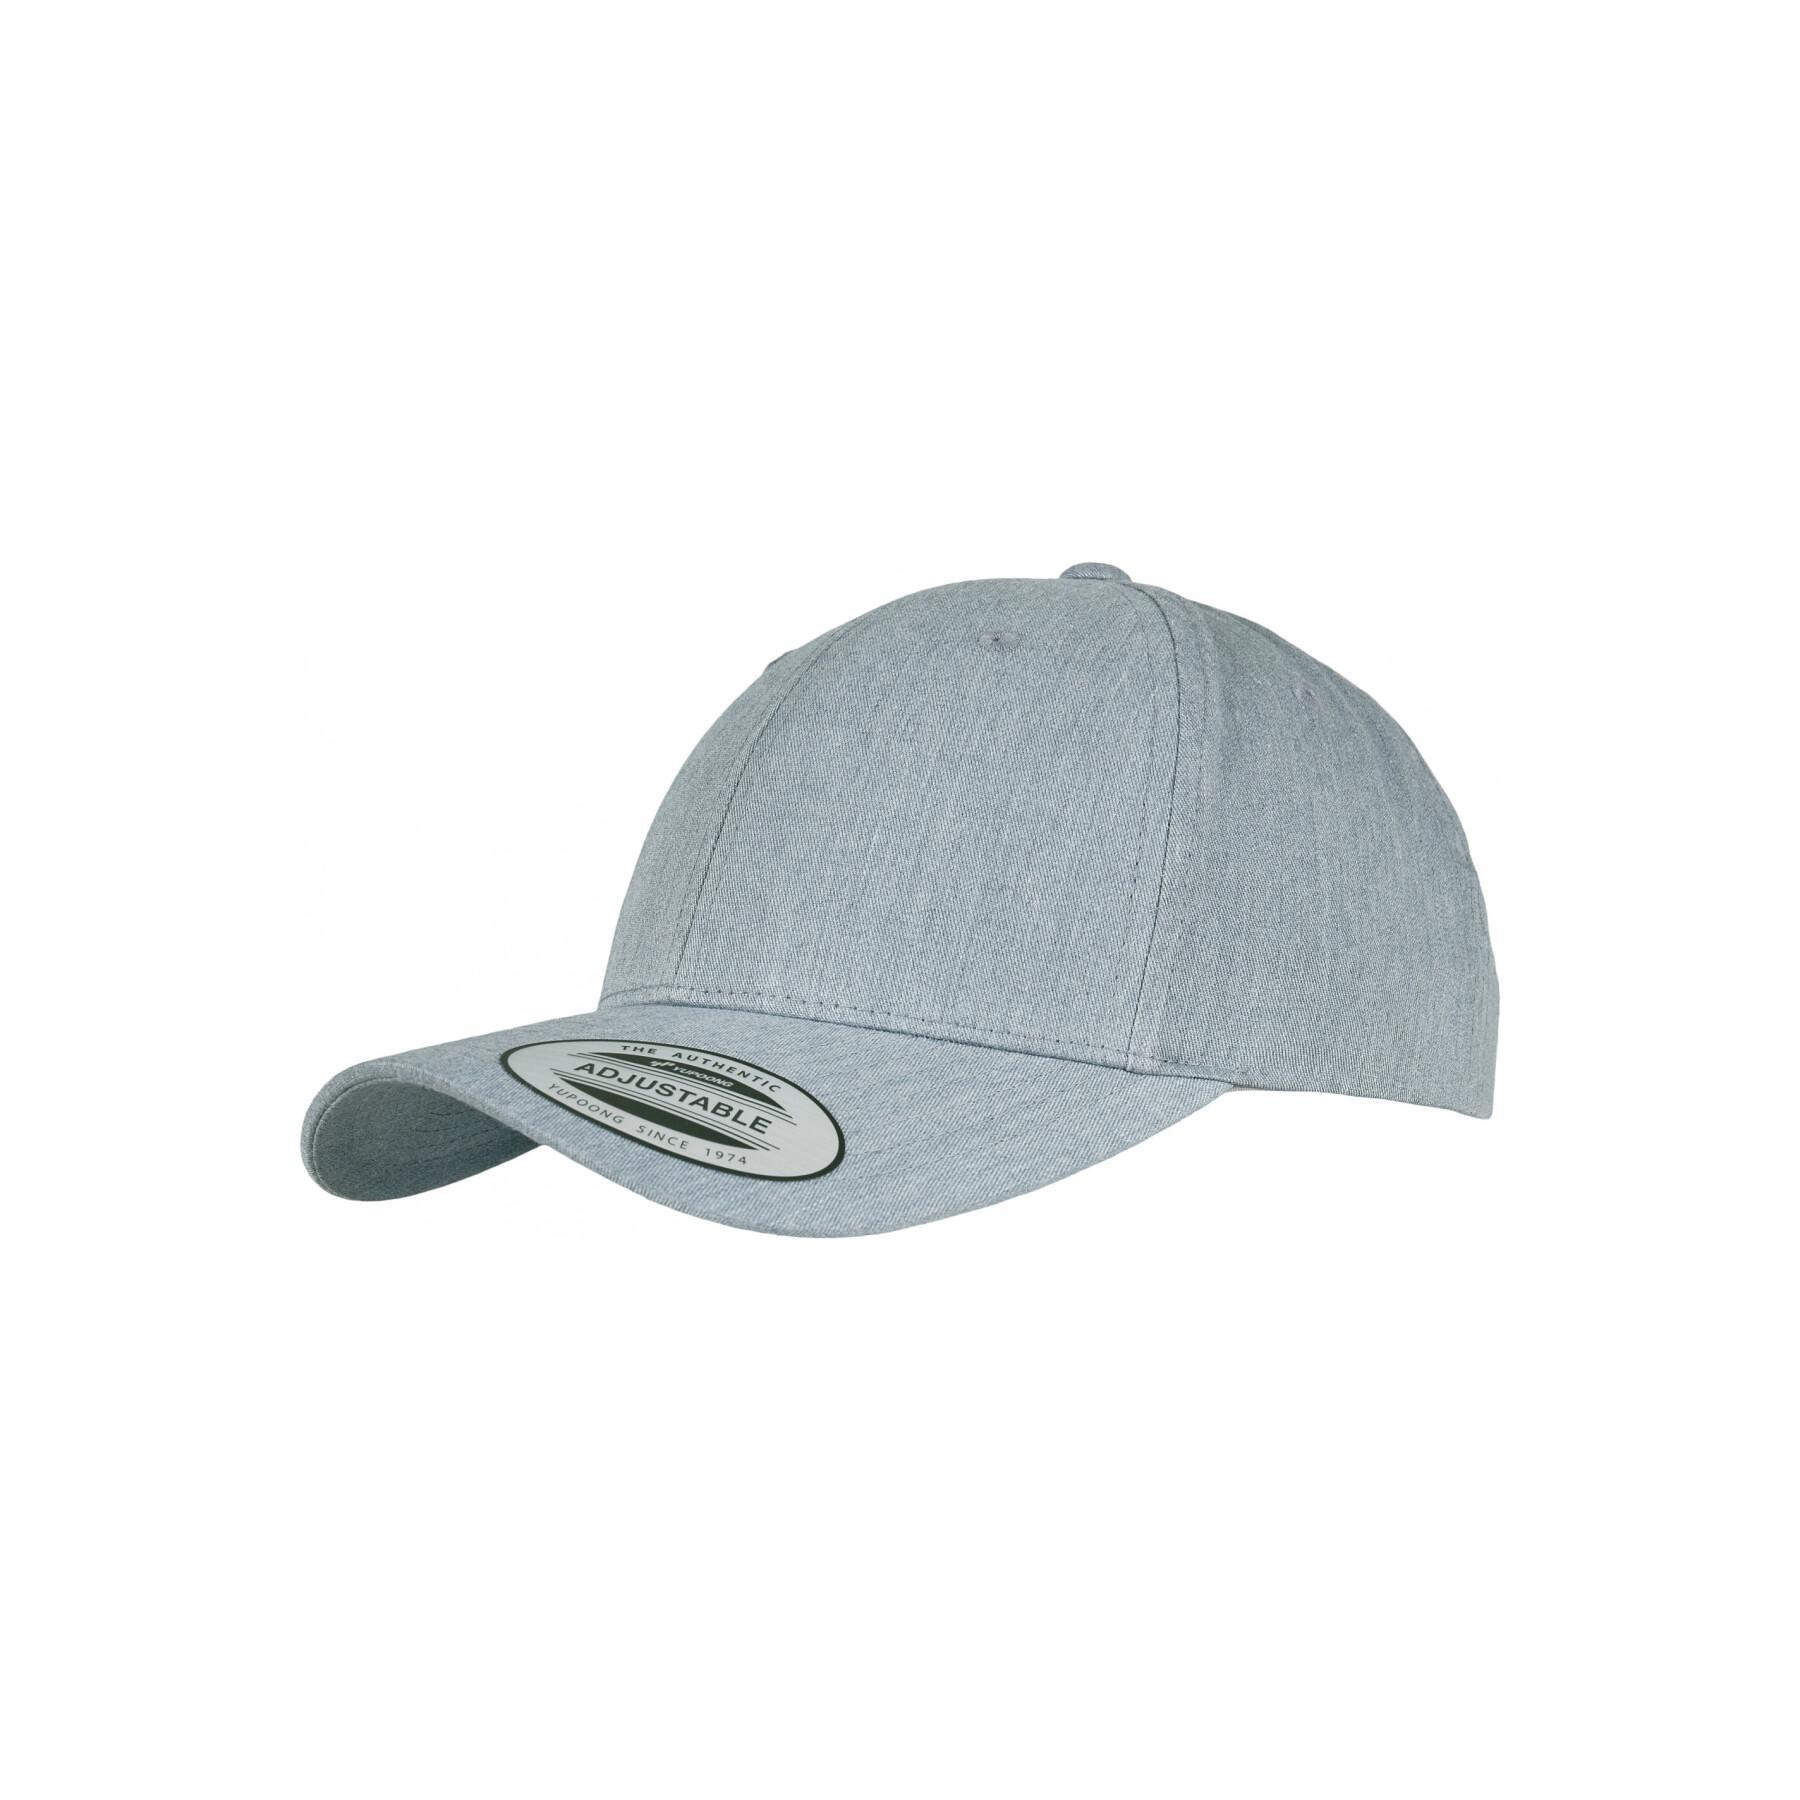 Classic curved cap Flexfit